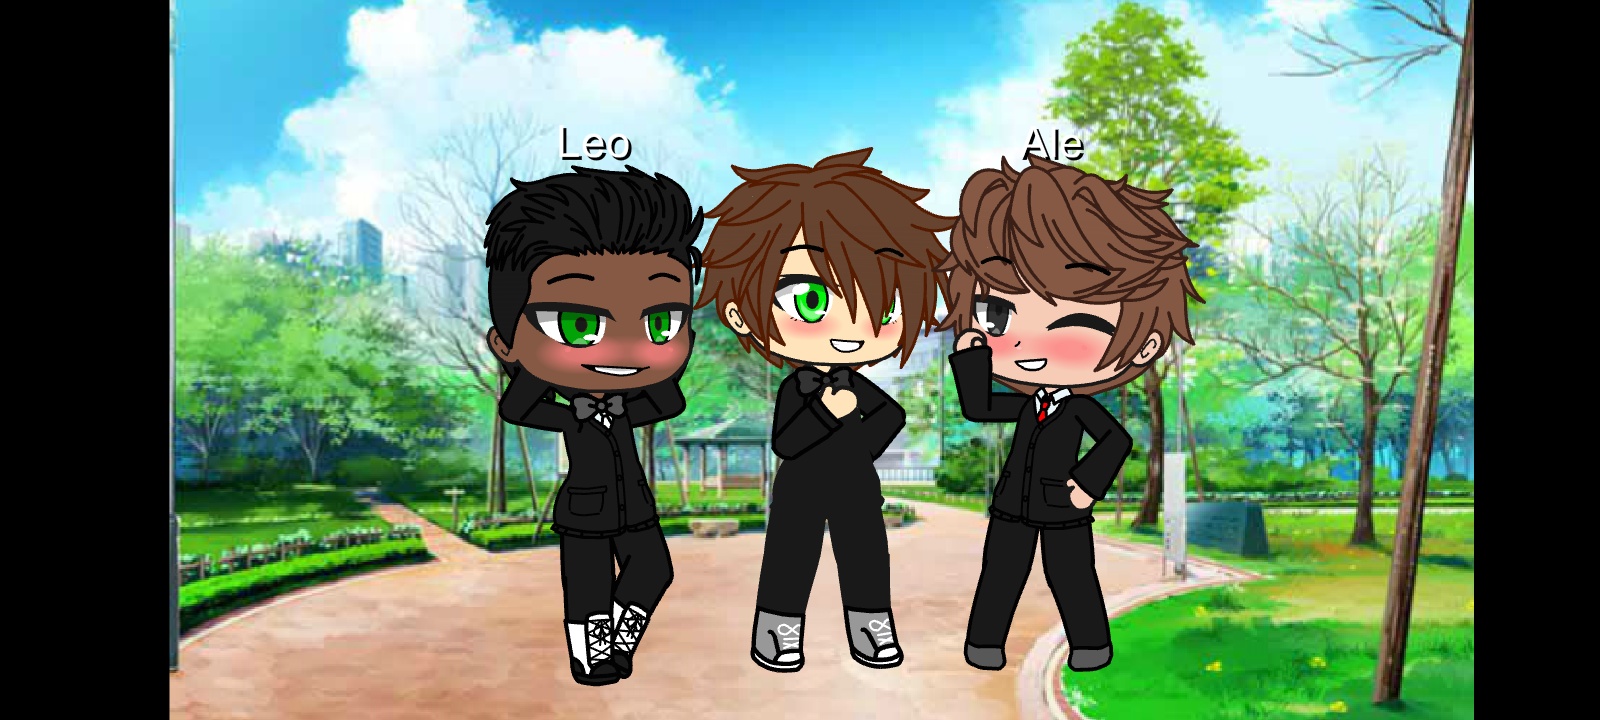 Personajes en el siguiente video: Ale, Leo y Eze Play